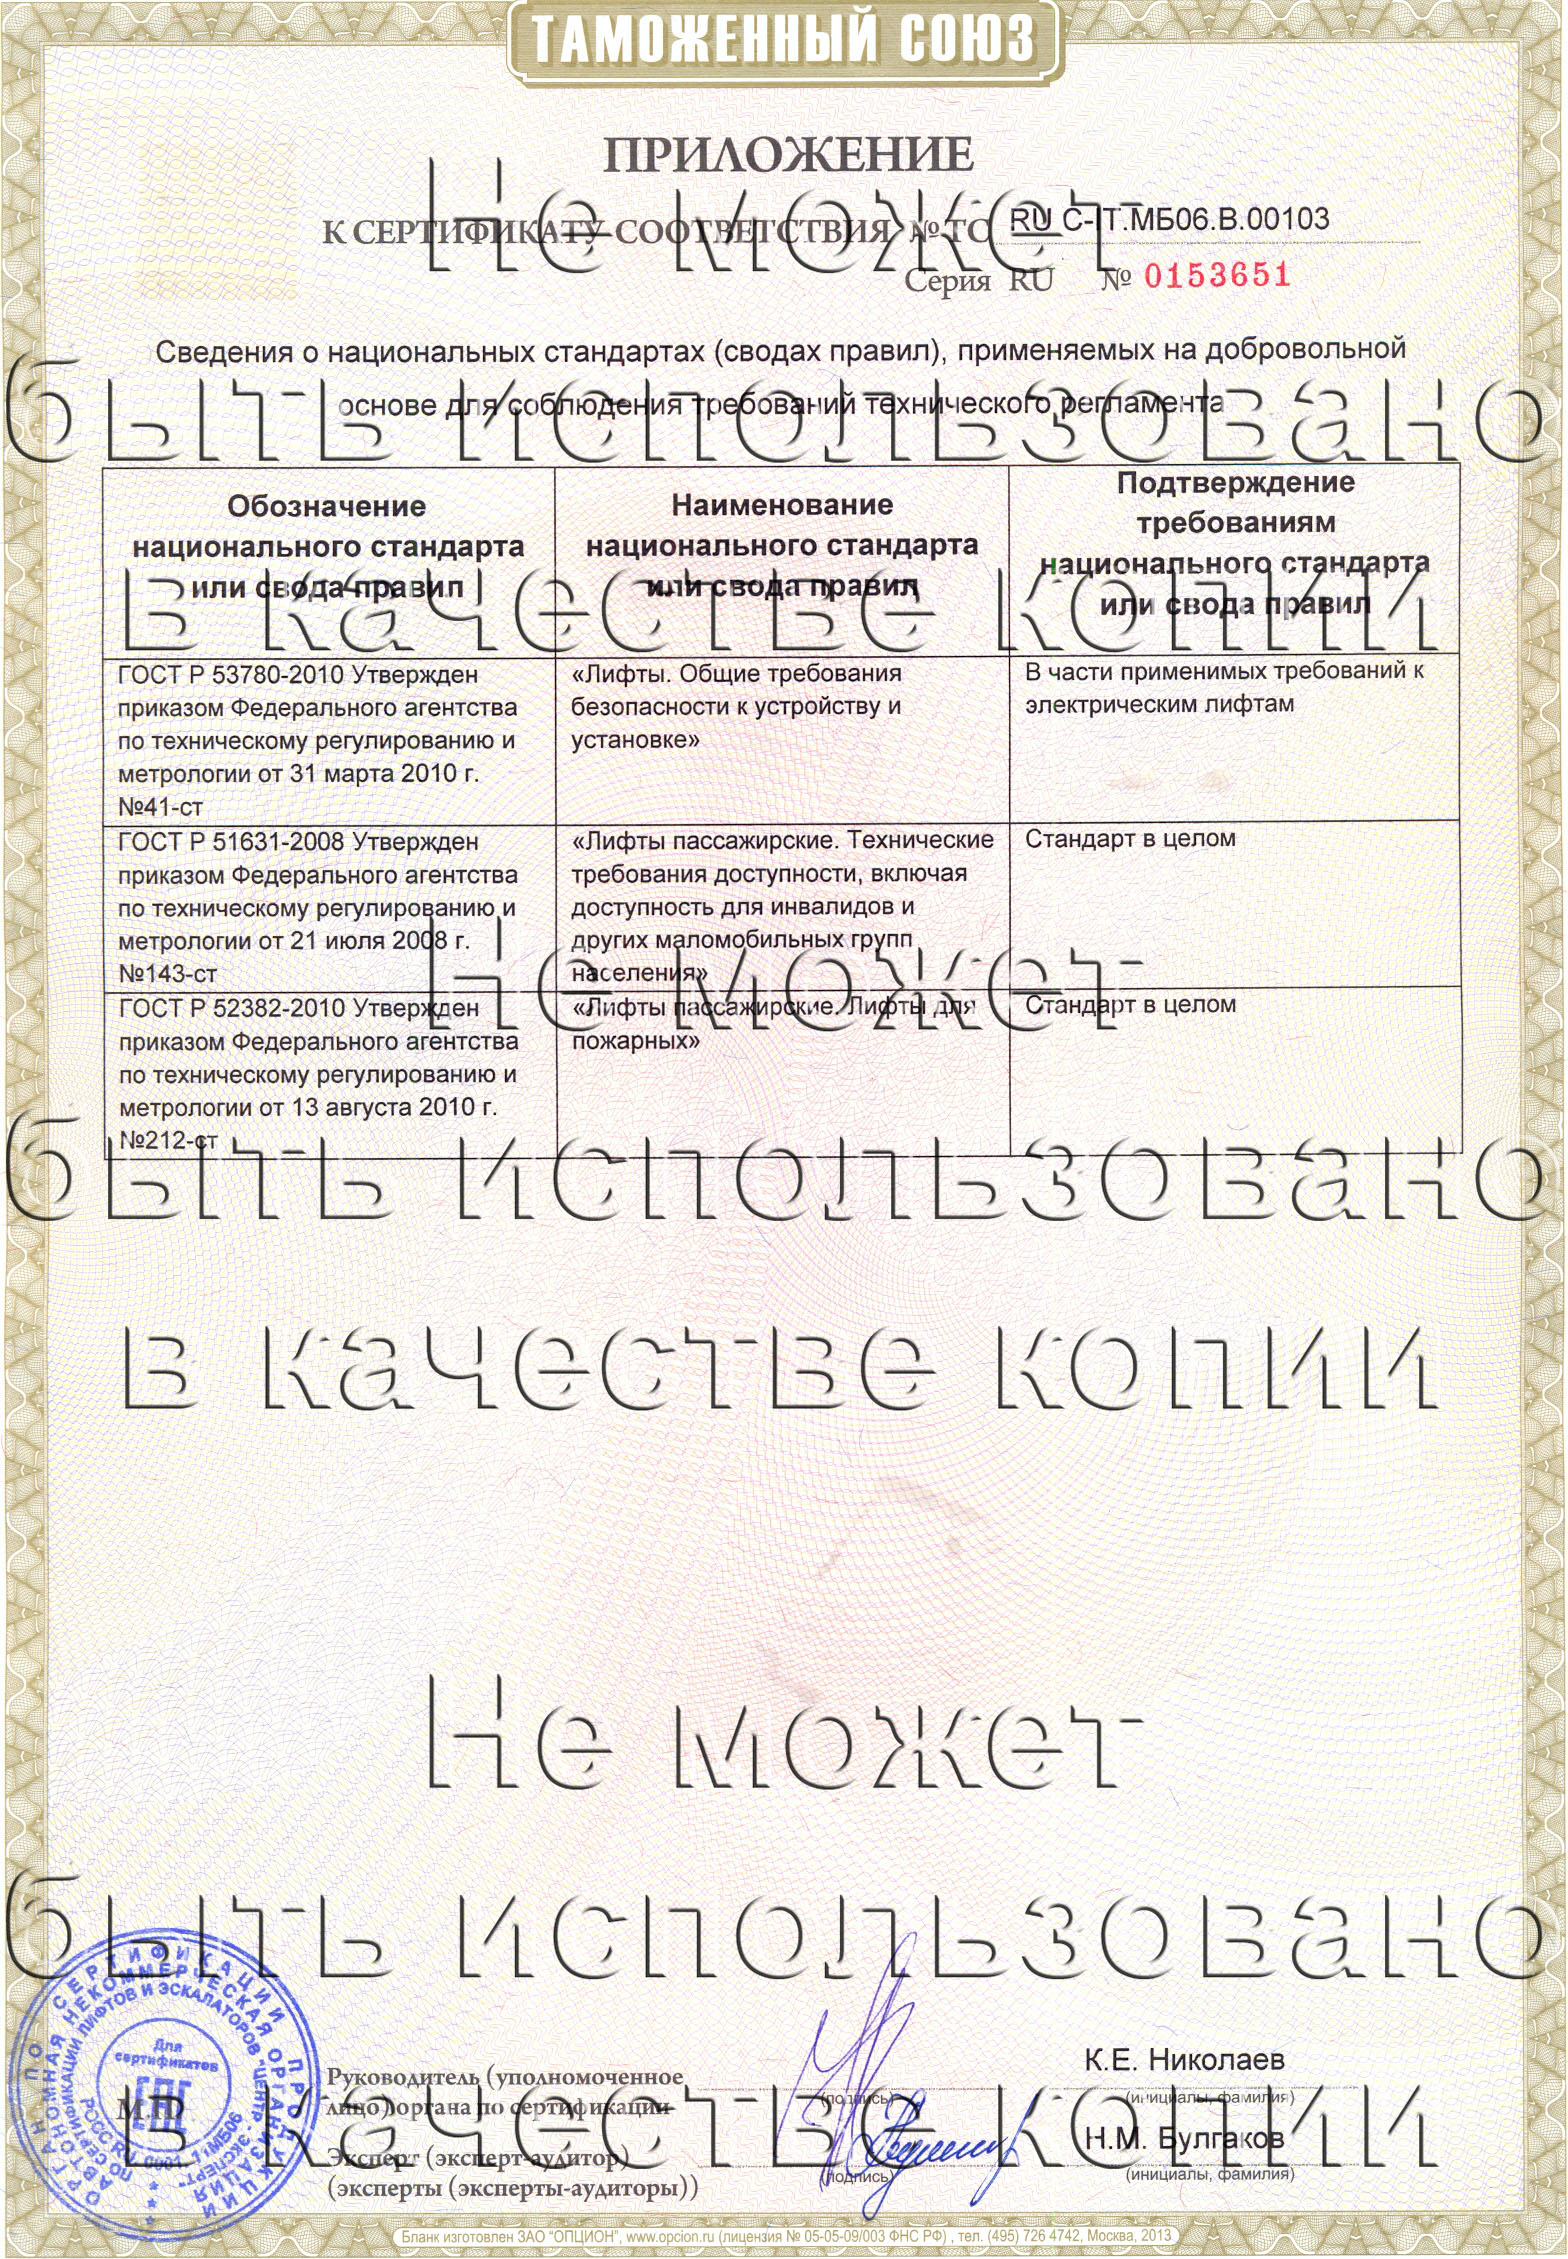 Приложение к сертификату № RU С-IT.МБ06.В.00103